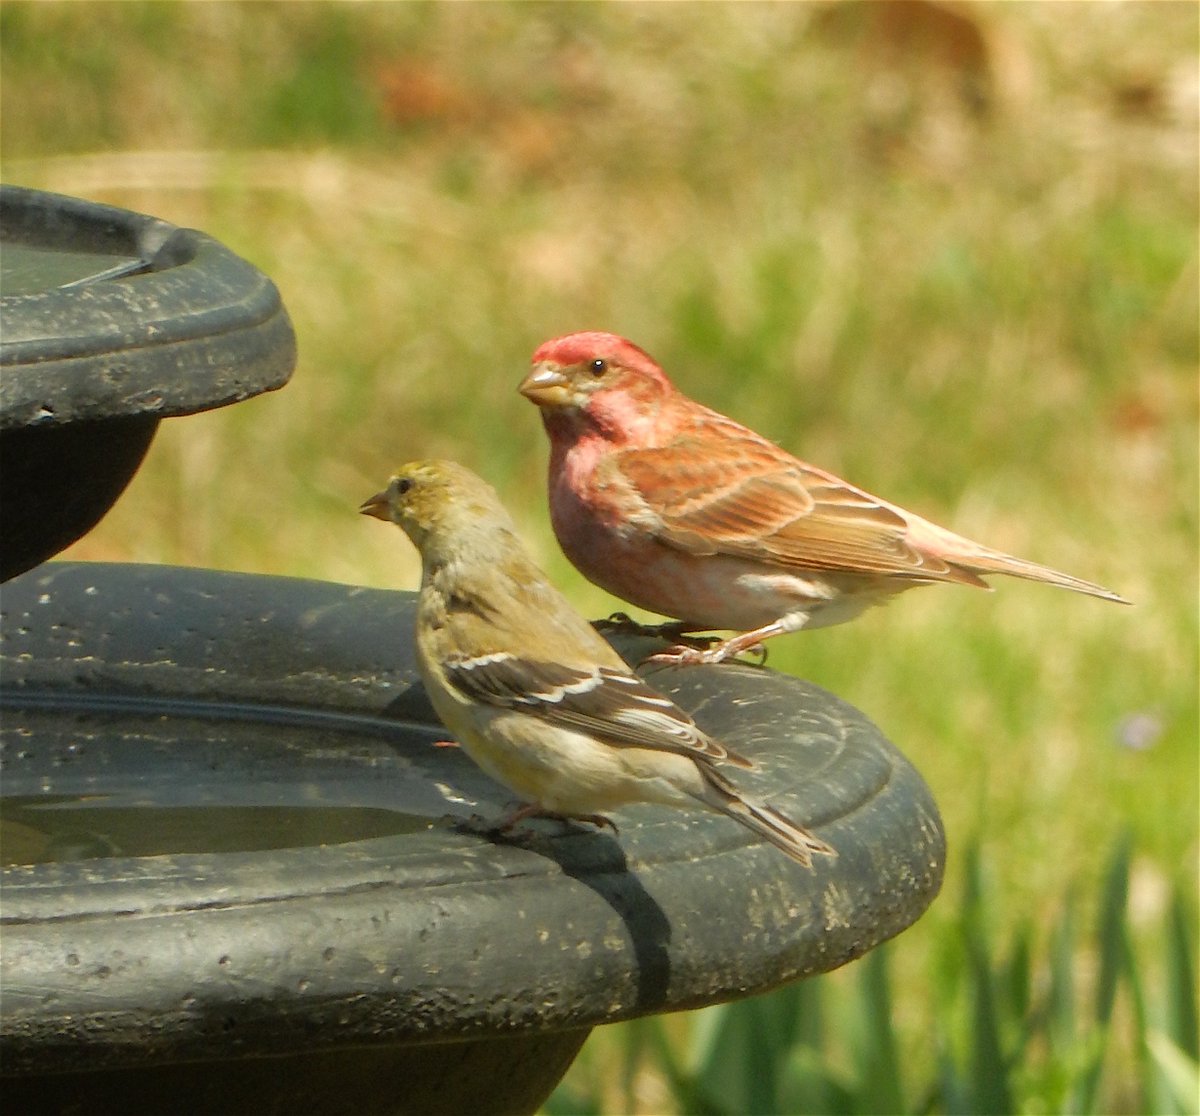 Birdbath buddies #goldfinch #redhousefinch